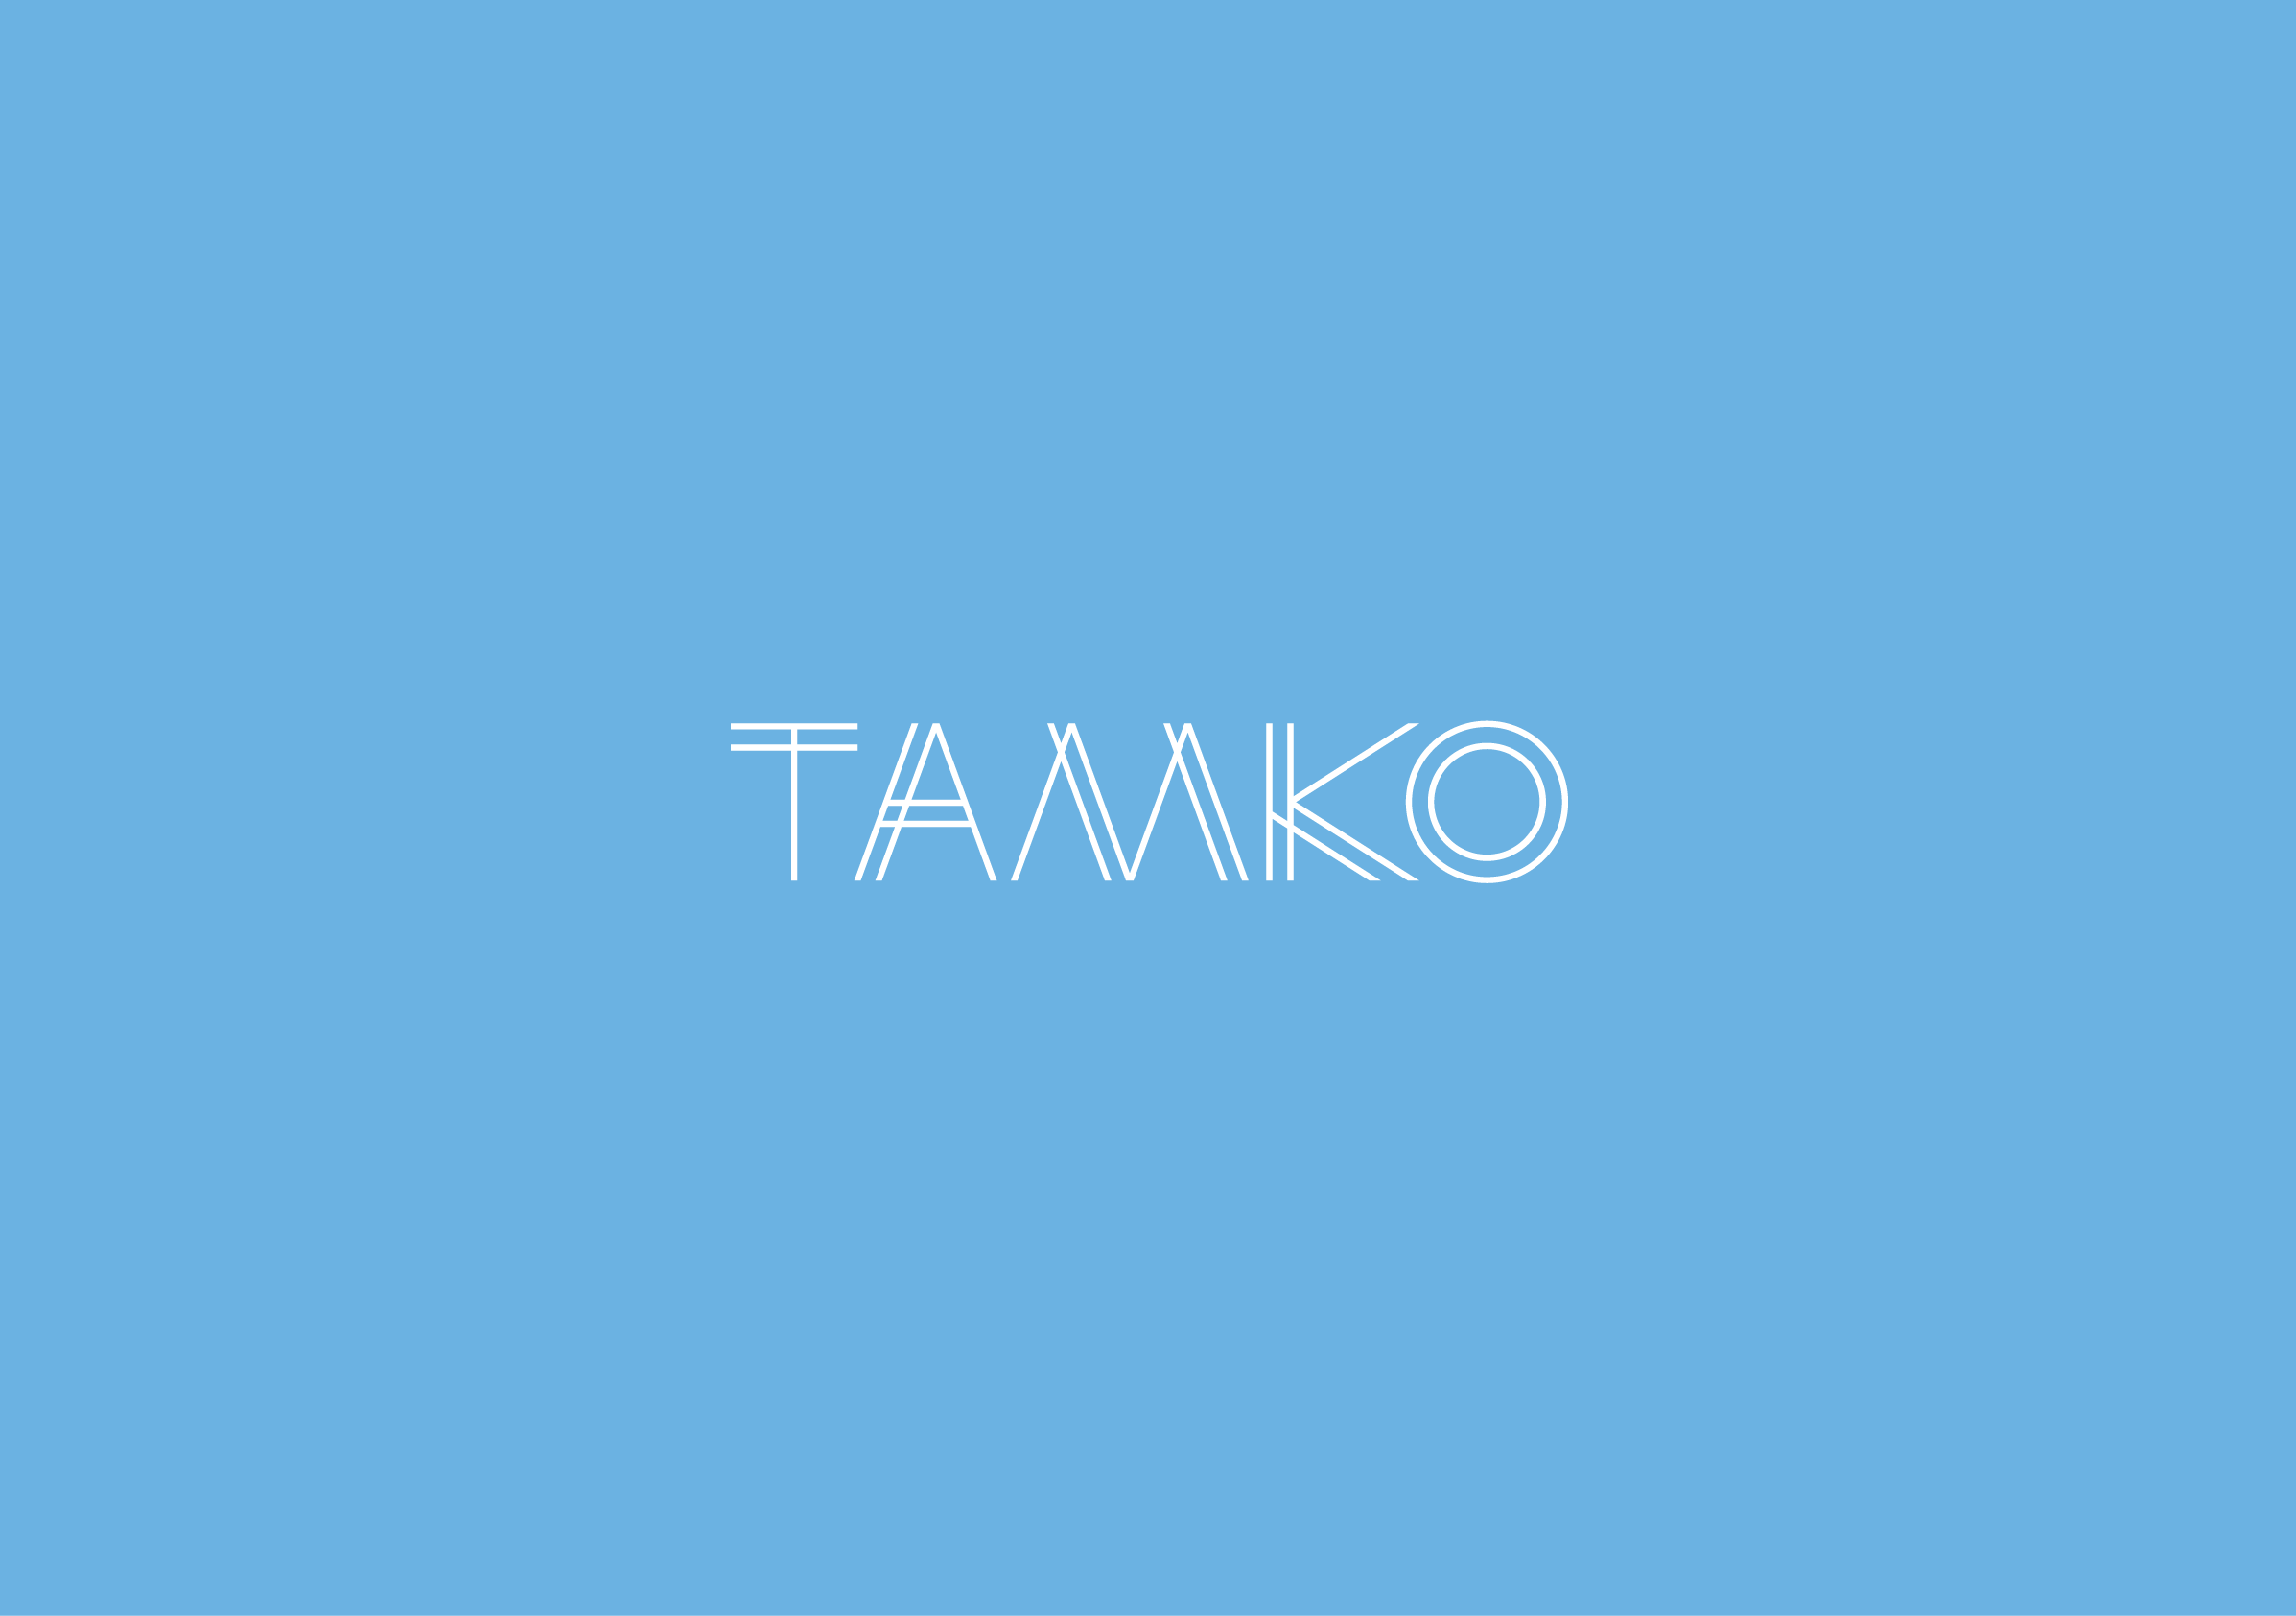 Symbol for Contractor Company Tamko by Ottawa Graphic Designer idApostle